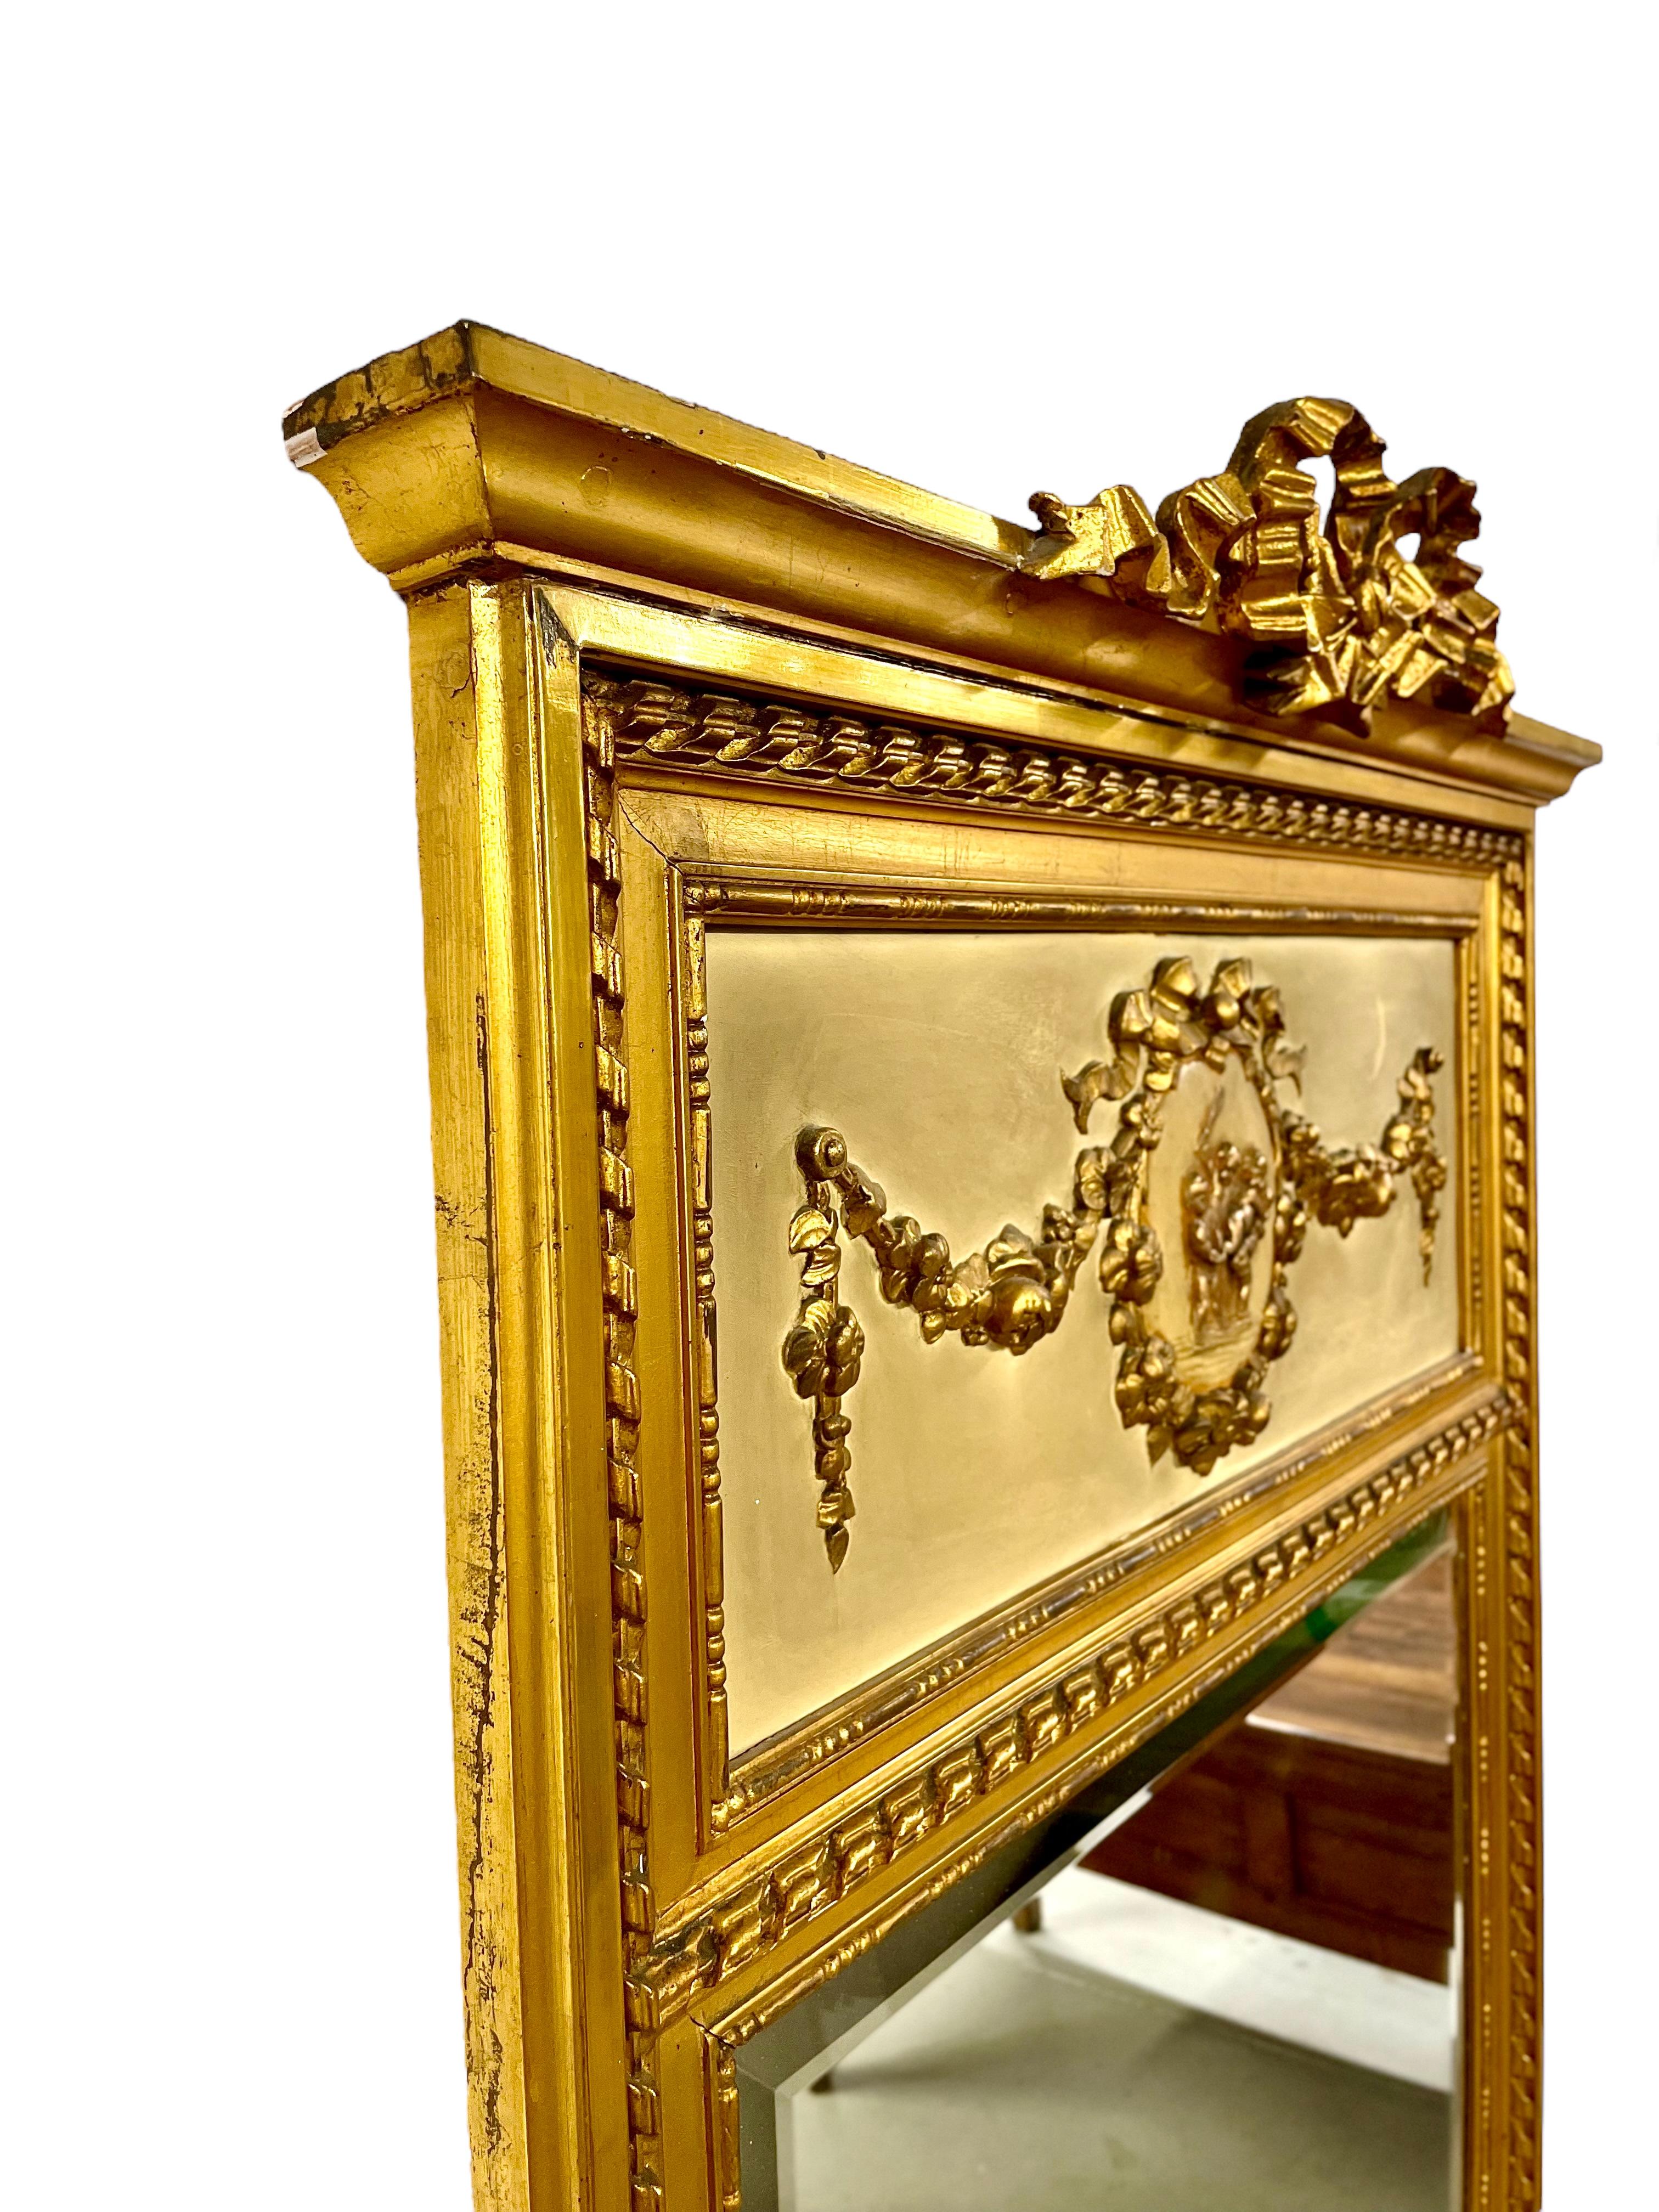 Dieser fabelhafte Trumeau-Spiegel im Louis XVI-Stil ist aus Holz und vergoldetem Stuck gefertigt. Seine abgeschrägte Spiegelplatte ist von einer kunstvoll geschnitzten Umrandung aus drei Perlen und einem gedrehten Seil umgeben. Der obere Teil des